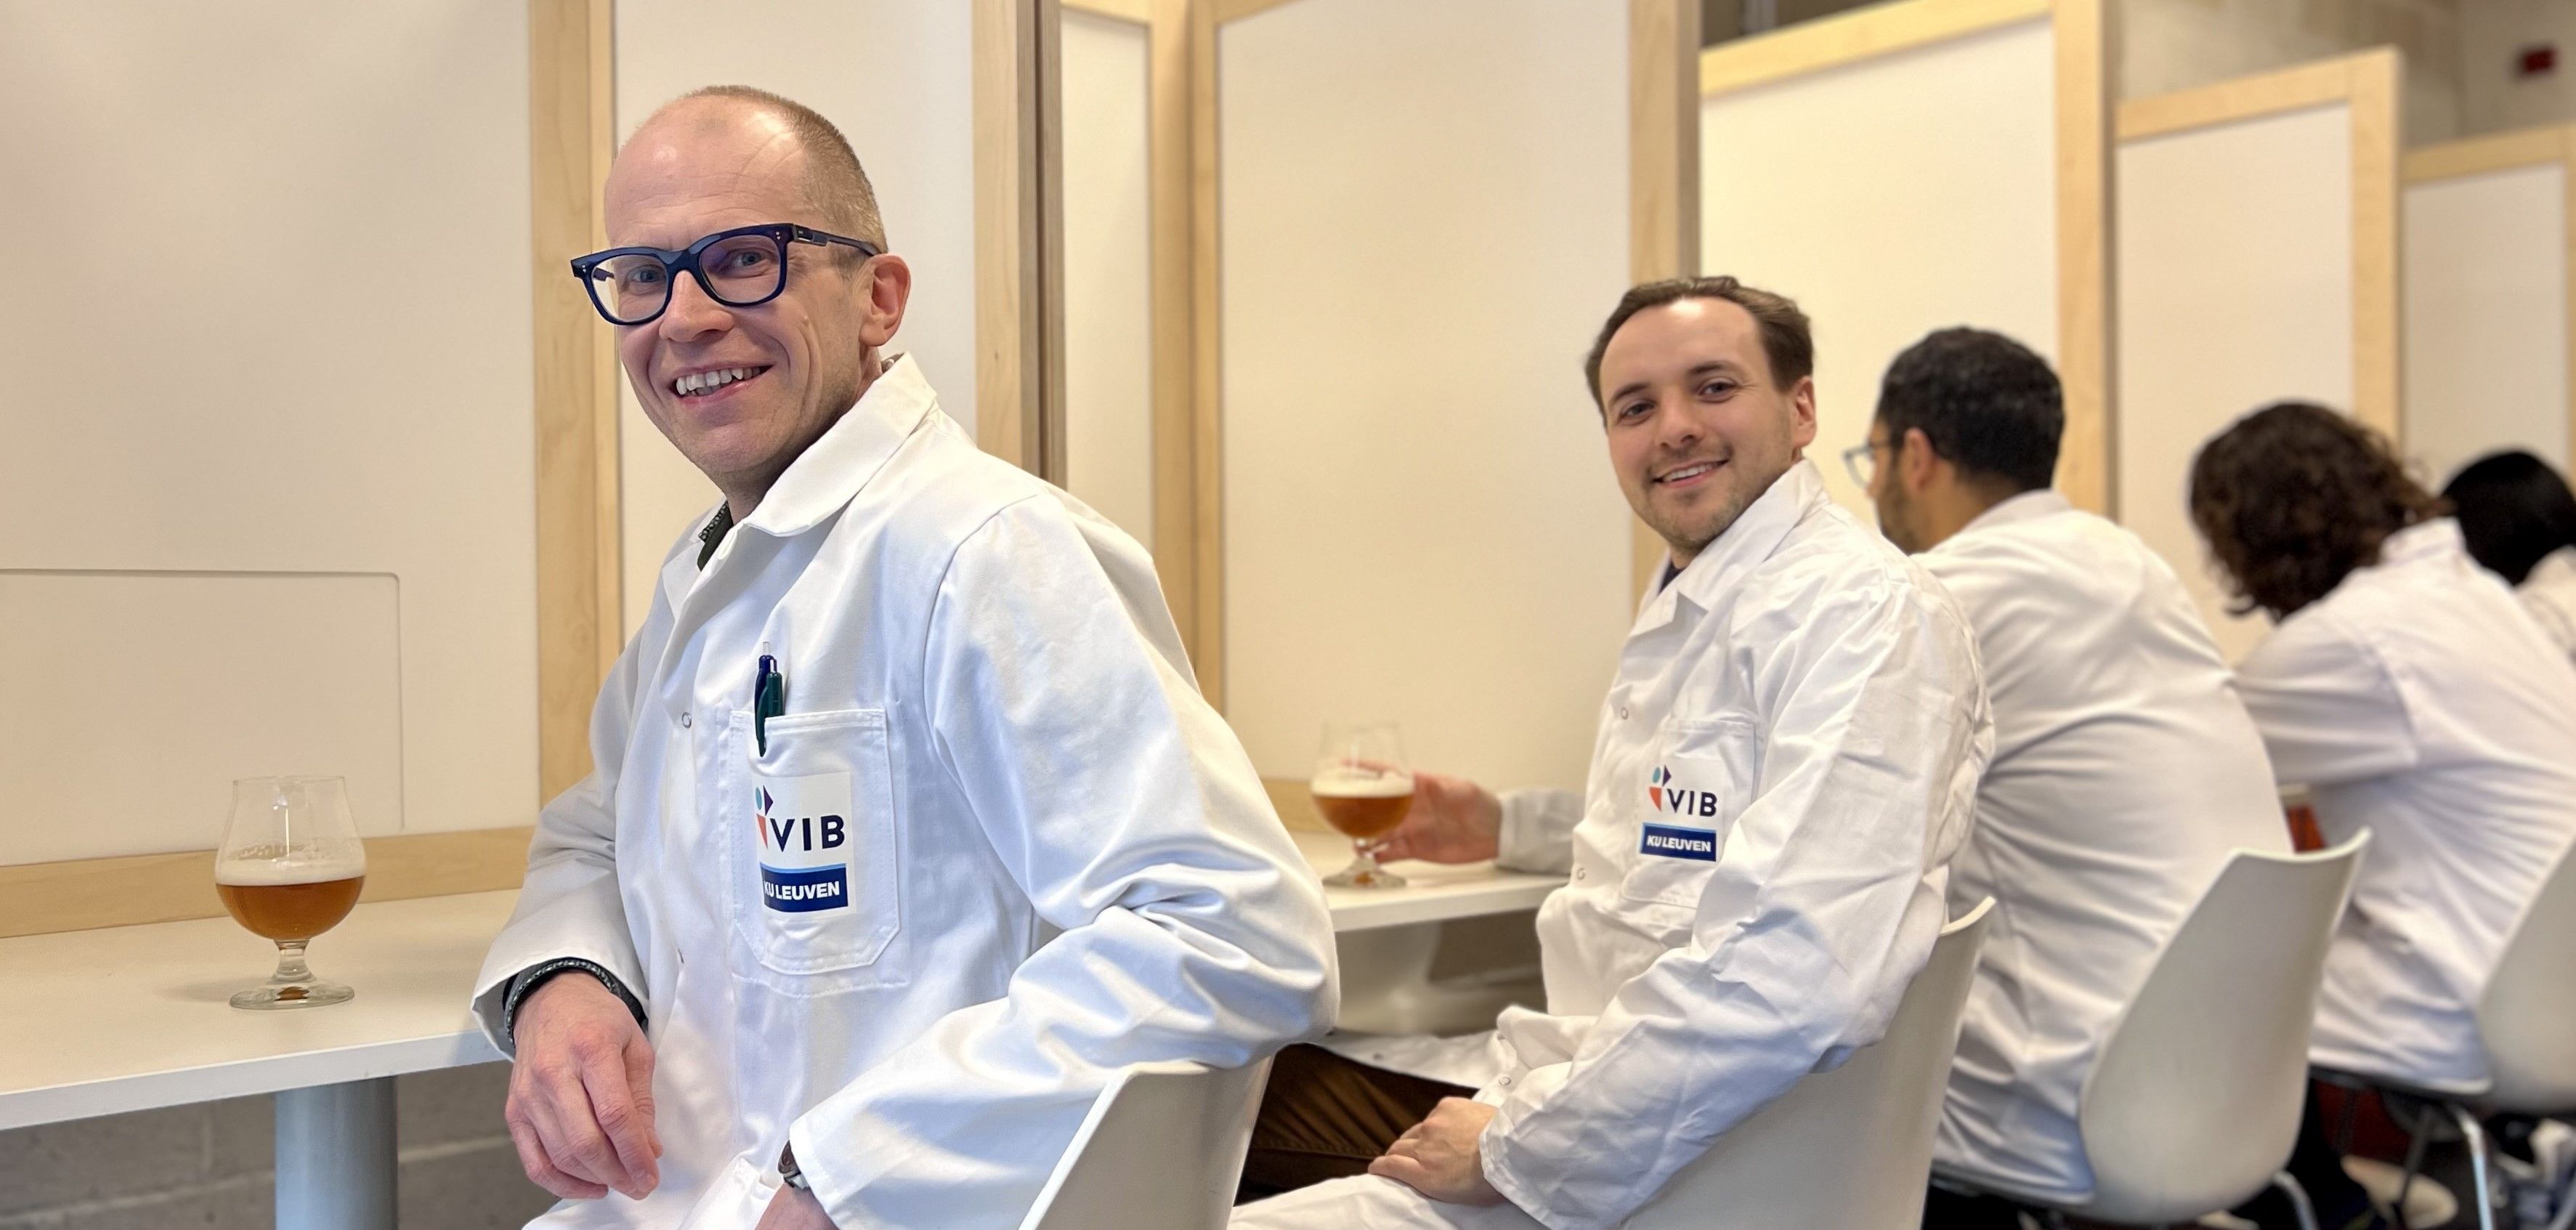 Kevin Verstrepen (Directeur van het VIB- KU Leuven Center voor Microbiologie) en Michiel Schreurs (eerste auteur van de studie) tijdens een smaaktest.